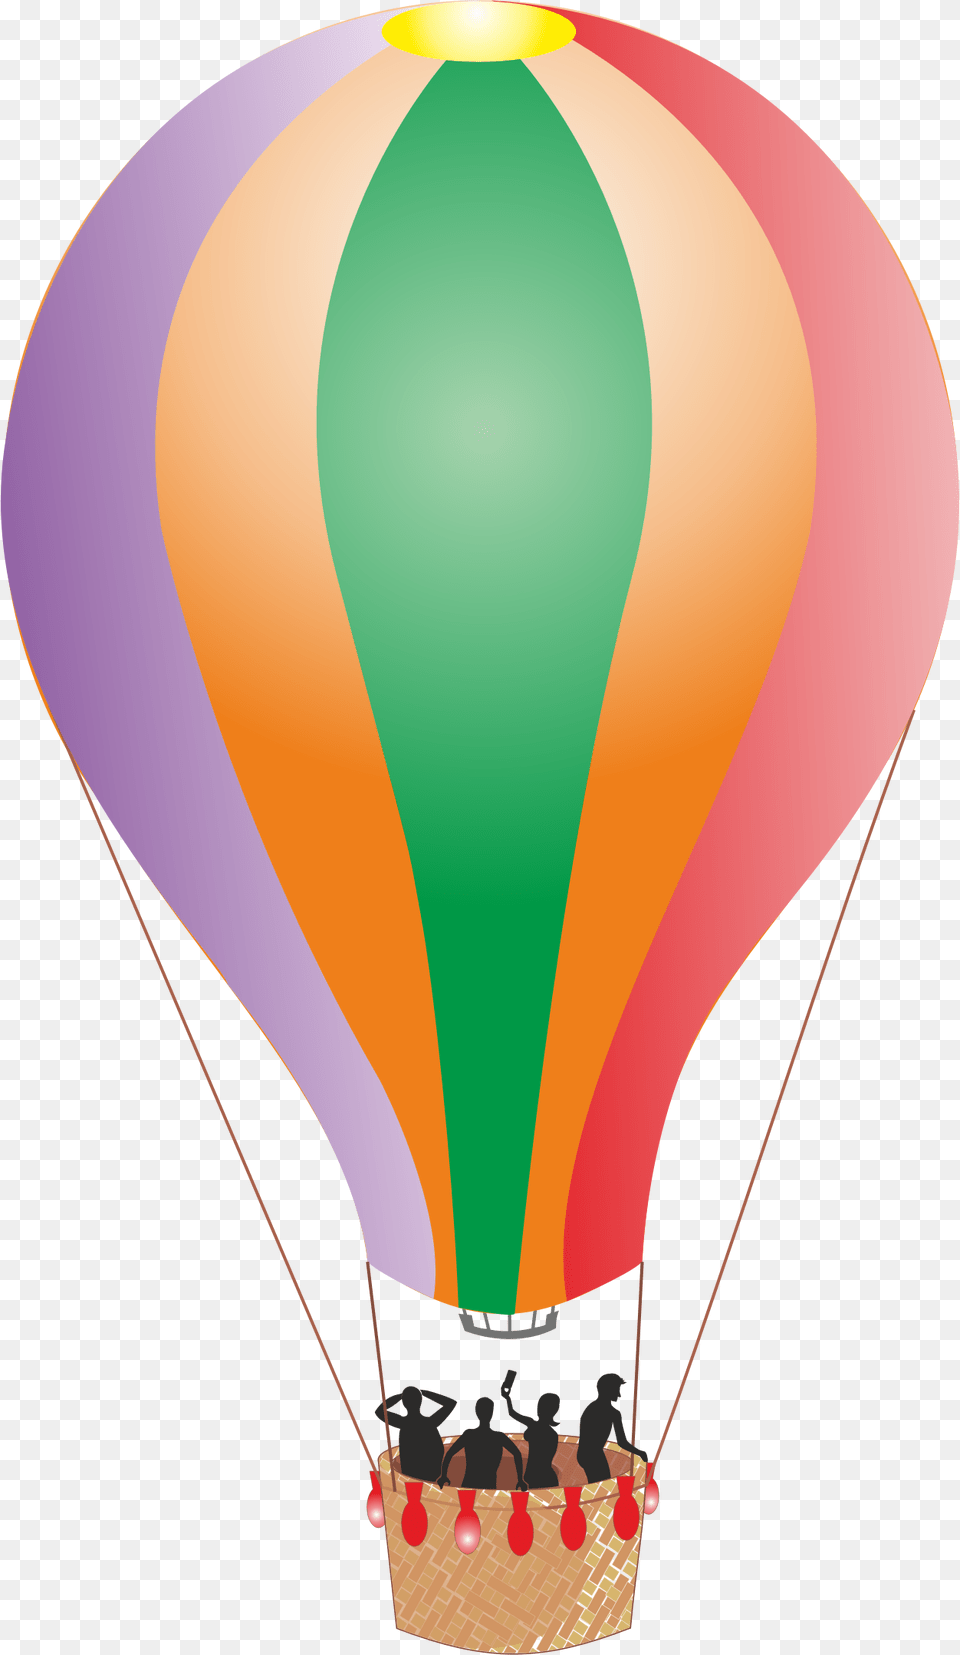 Air Balloon, Aircraft, Hot Air Balloon, Transportation, Vehicle Free Png